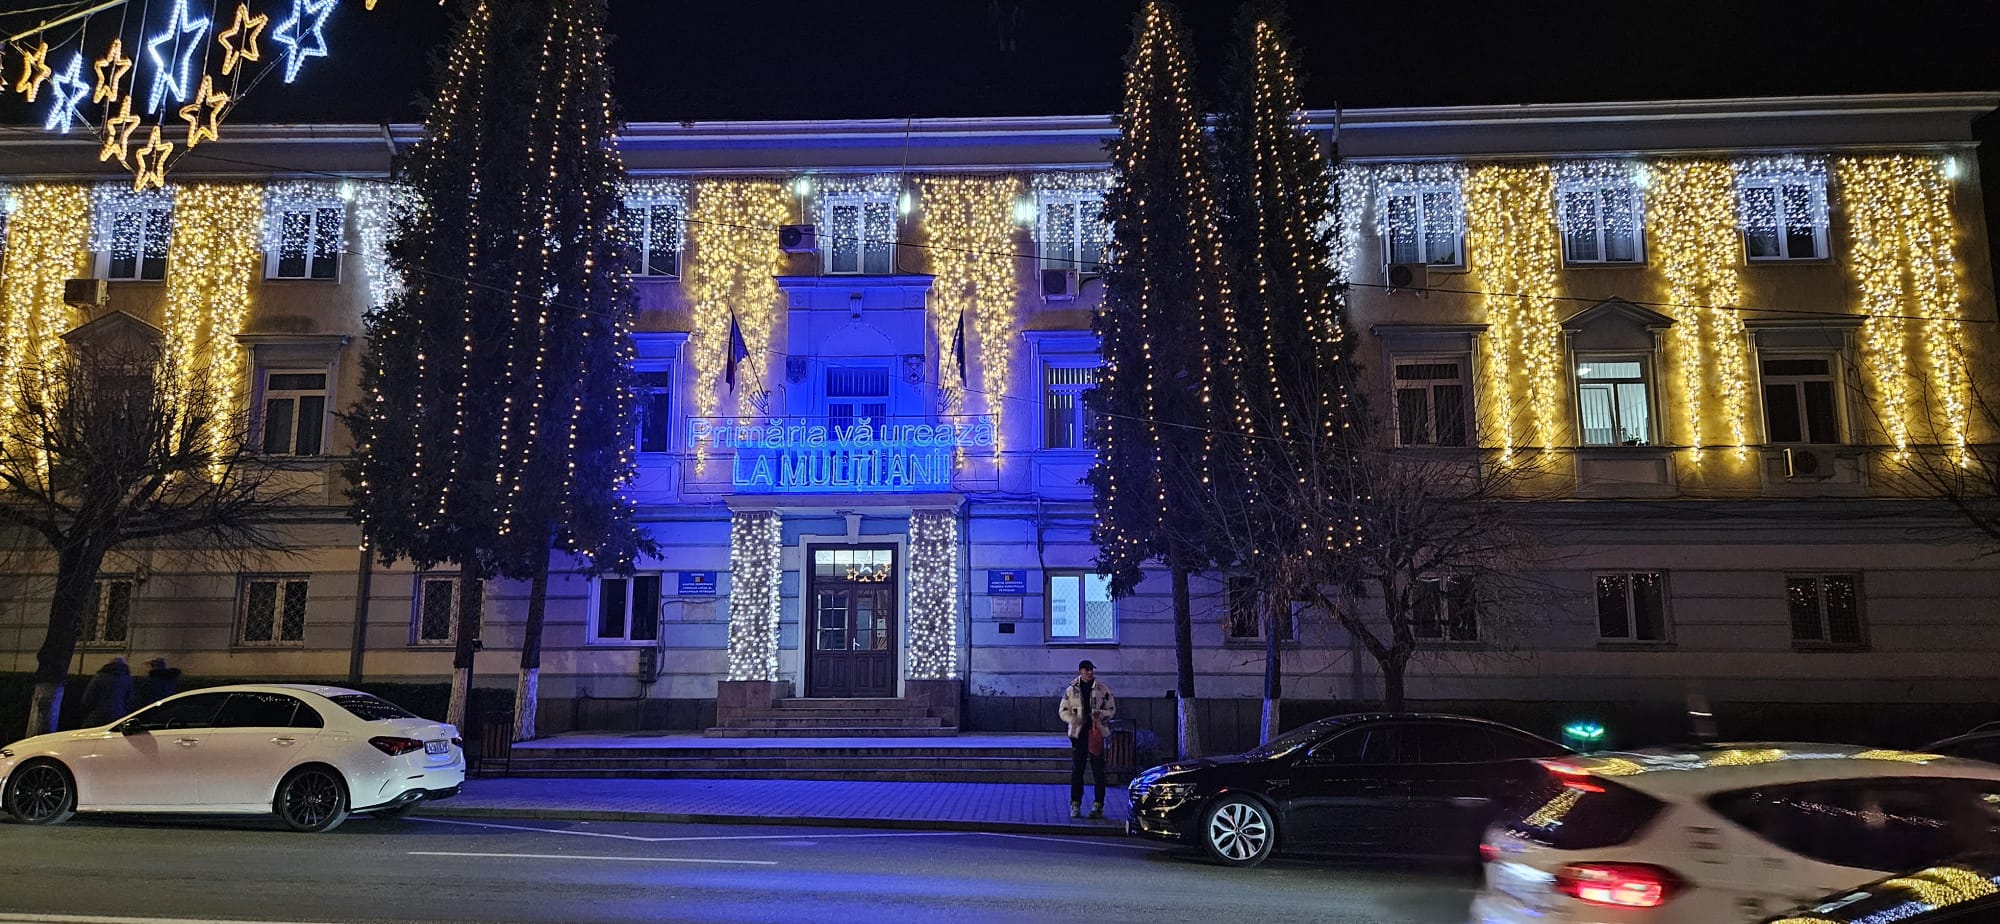 Petroșani: Iluminatul festiv de sărbători a fost aprins